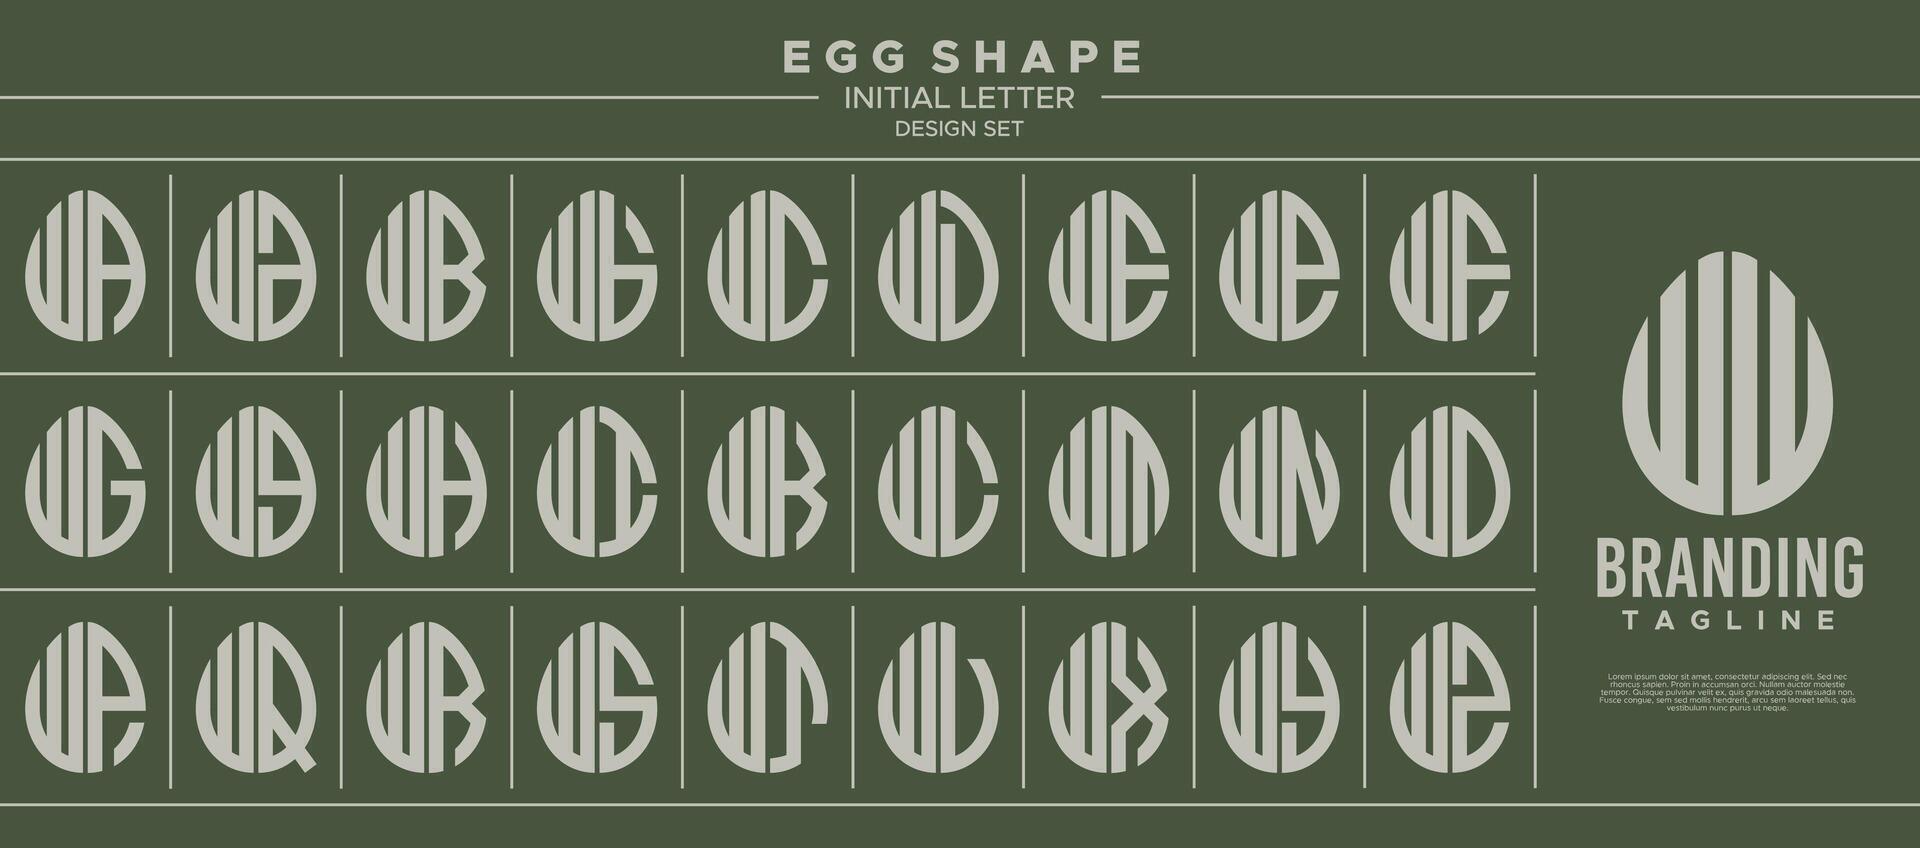 colección de comida huevo forma inicial letra w ww logo diseño vector